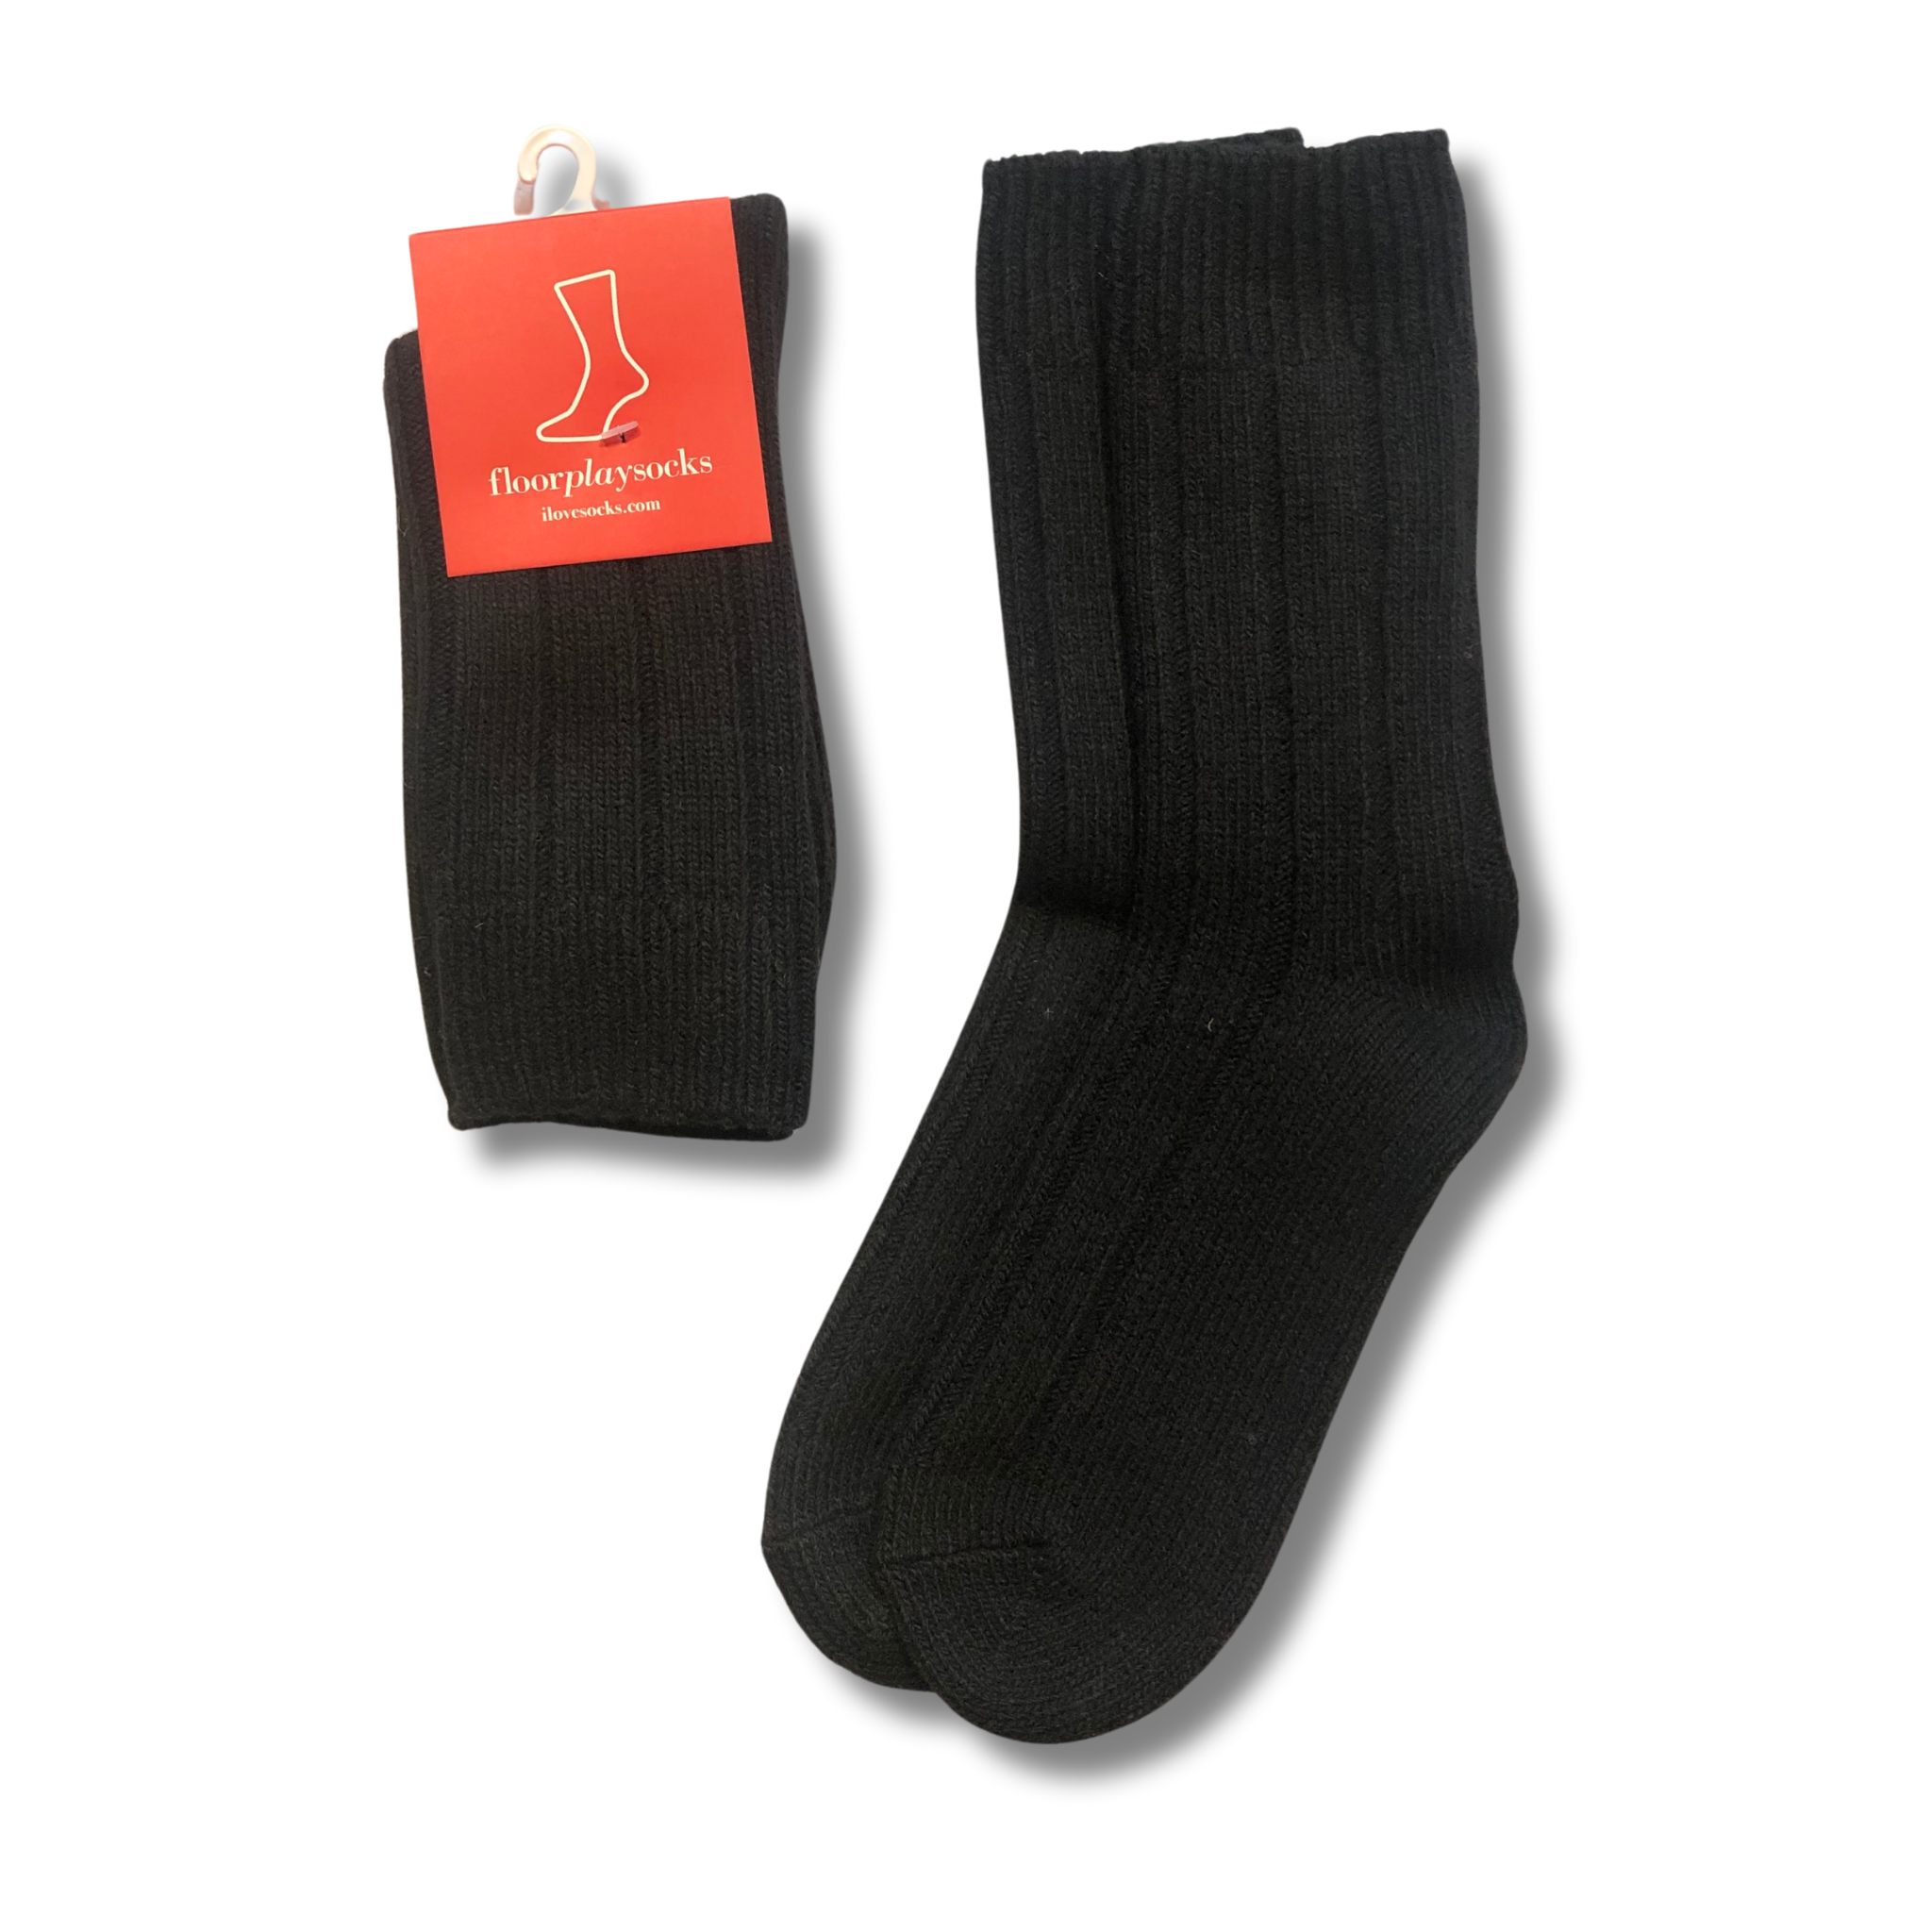 FPS Wool Boot Socks (Women's)